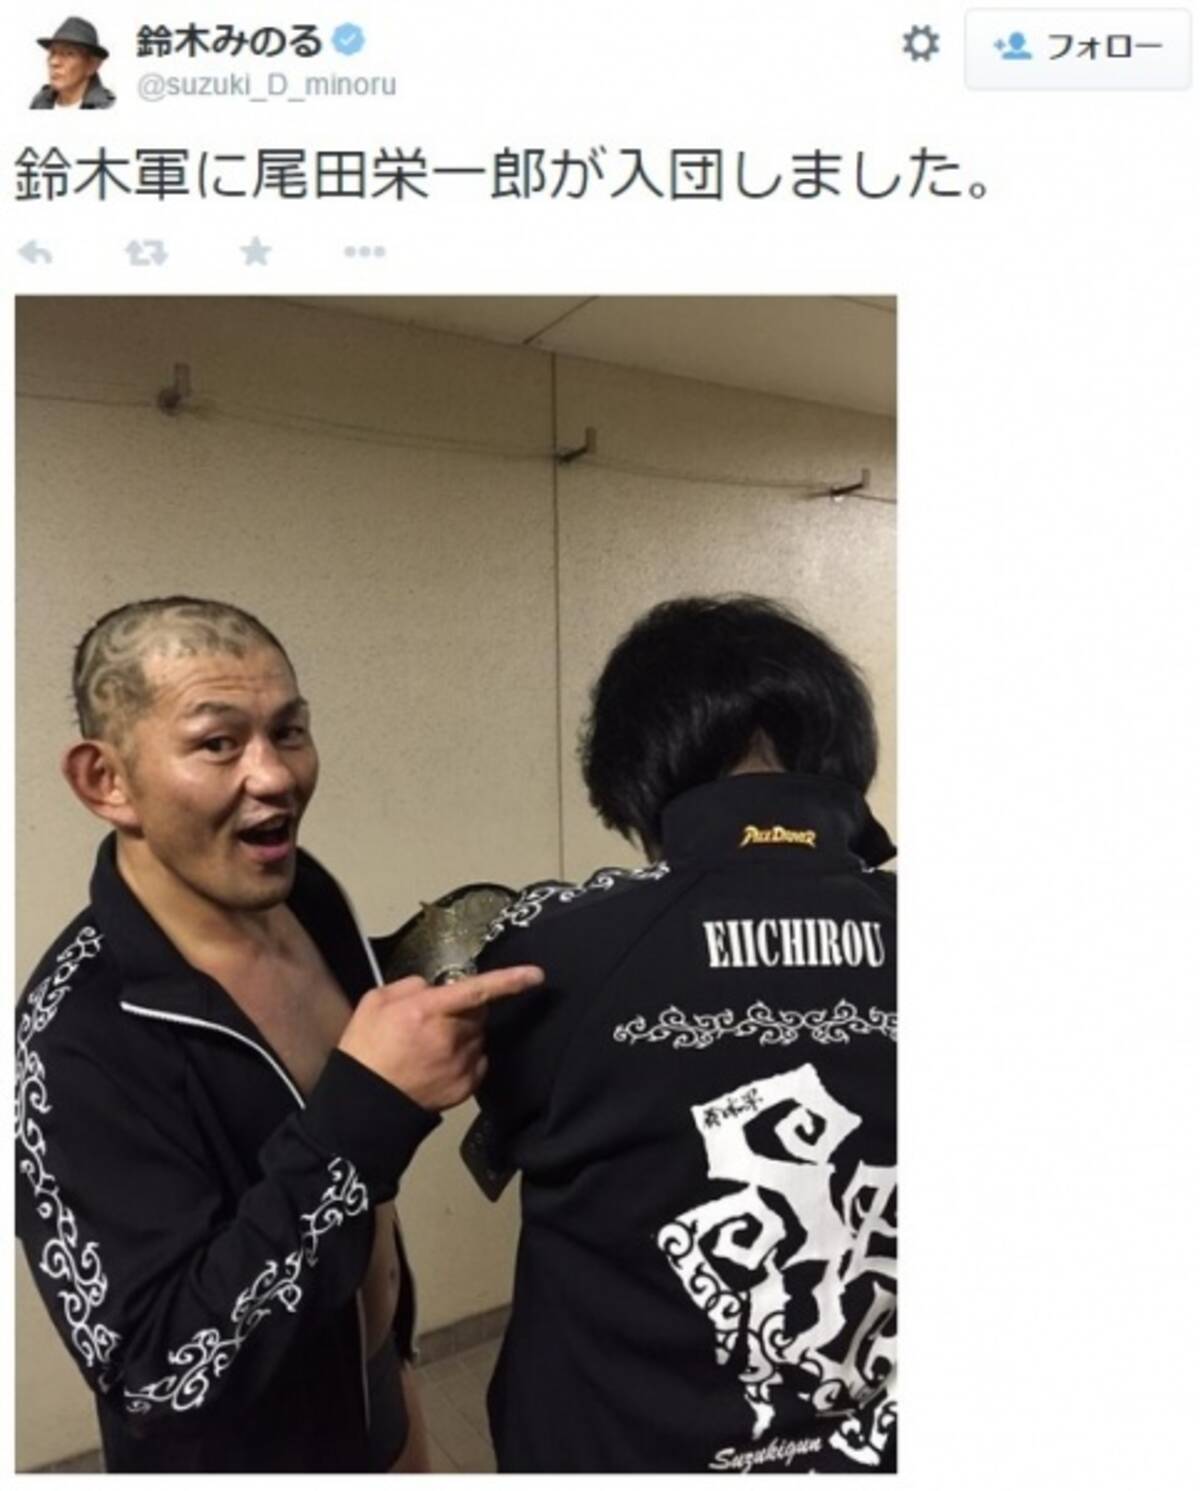 ワンピース 作者が新日本プロレスのユニットに入団 鈴木みのるがツイッターで明かす 15年3月16日 エキサイトニュース